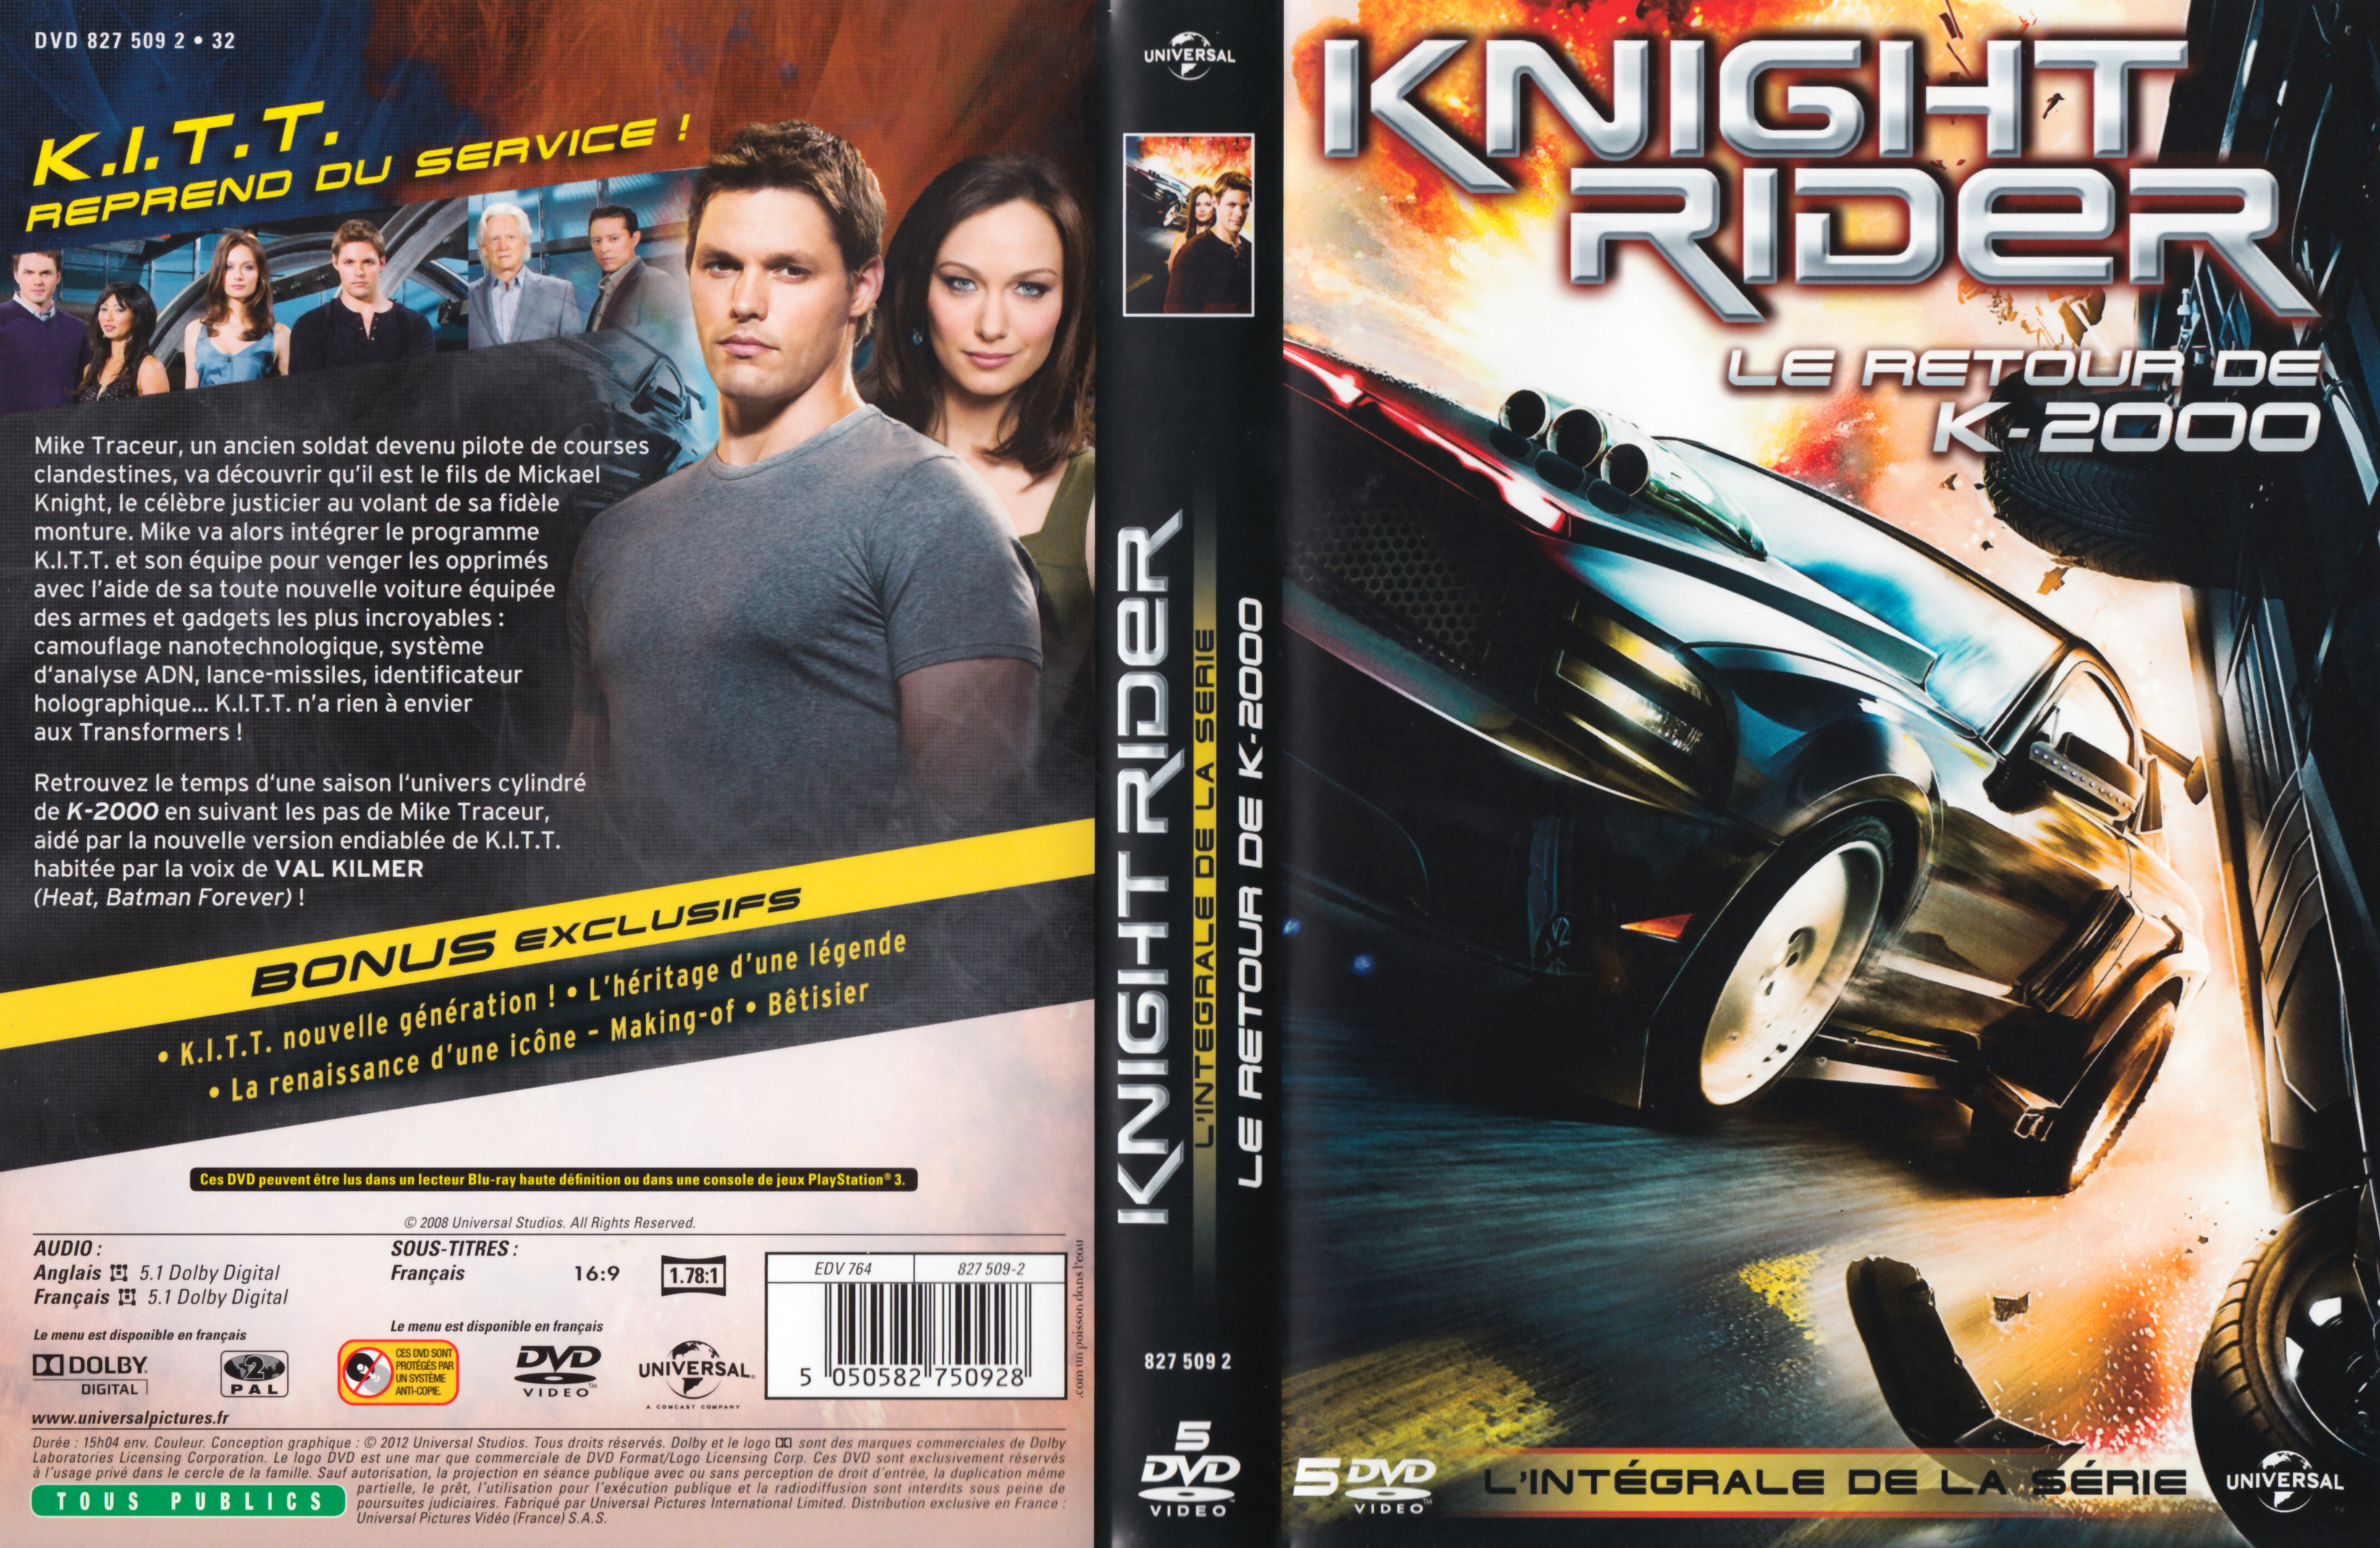 Jaquette DVD Knight rider le retour de K2000 v2